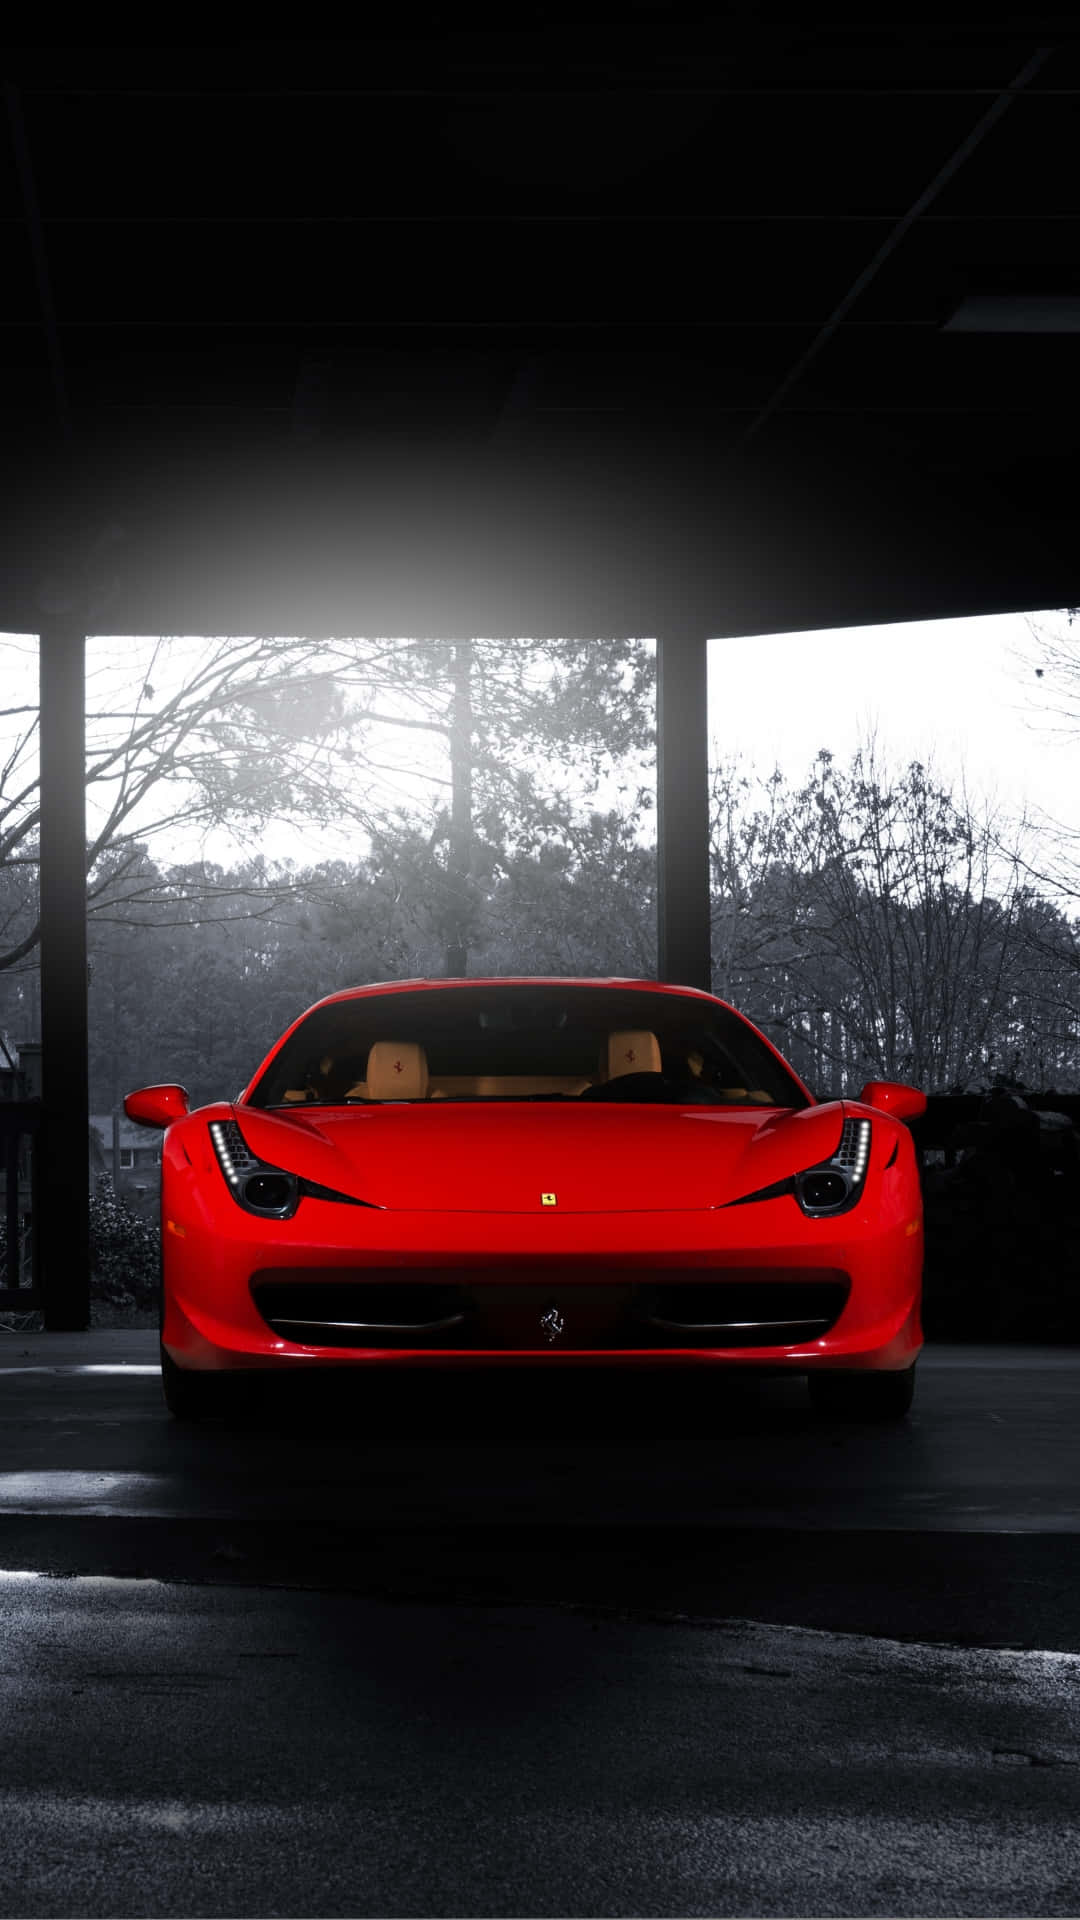 Føl den magtfulde luksus med din Ferrari Iphone X Wallpaper